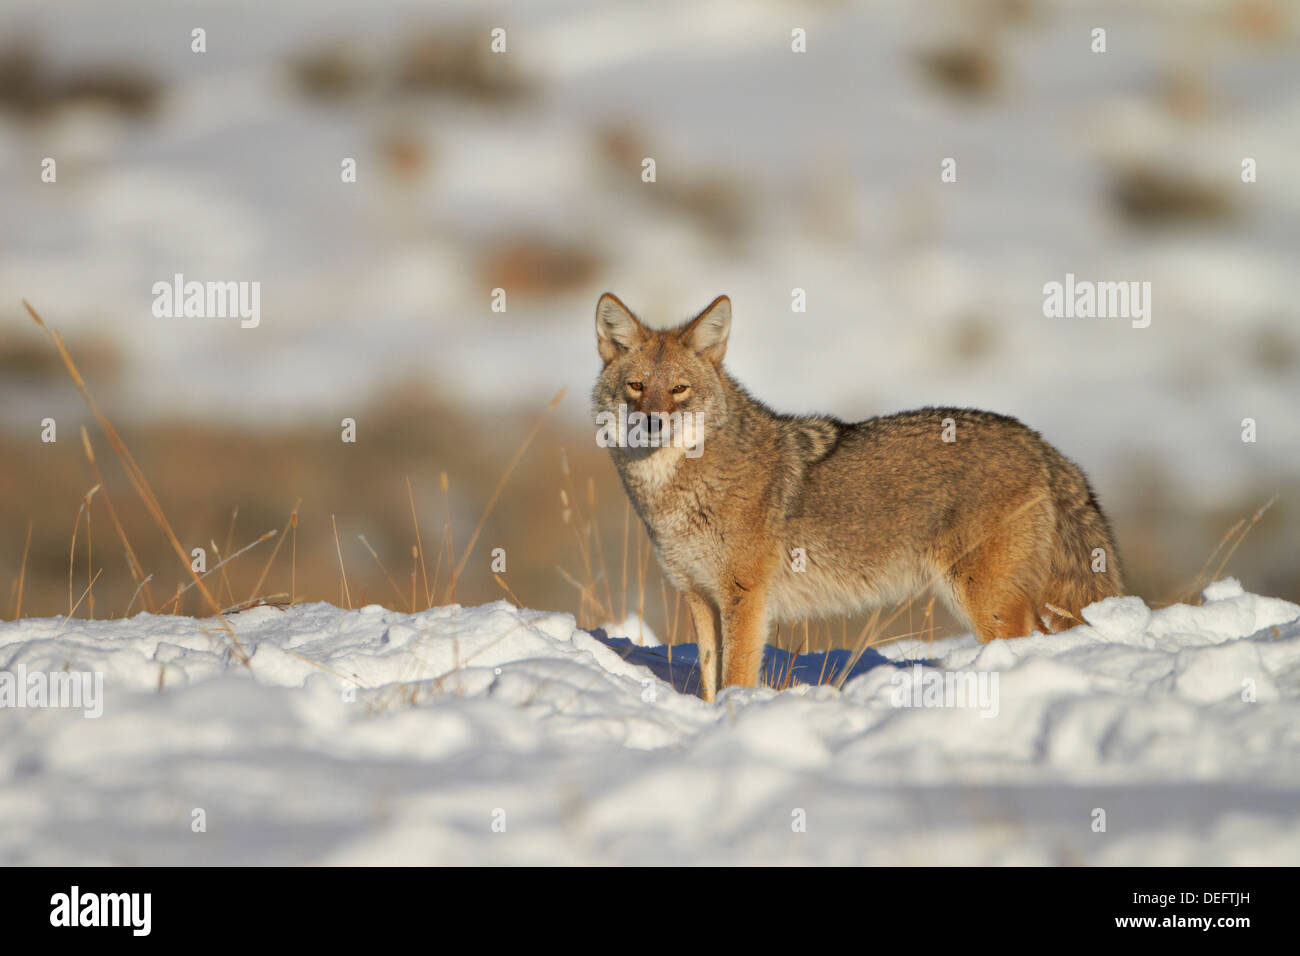 Le Coyote (Canis latrans) dans la neige, Parc National de Yellowstone, Wyoming, États-Unis d'Amérique, Amérique du Nord Banque D'Images